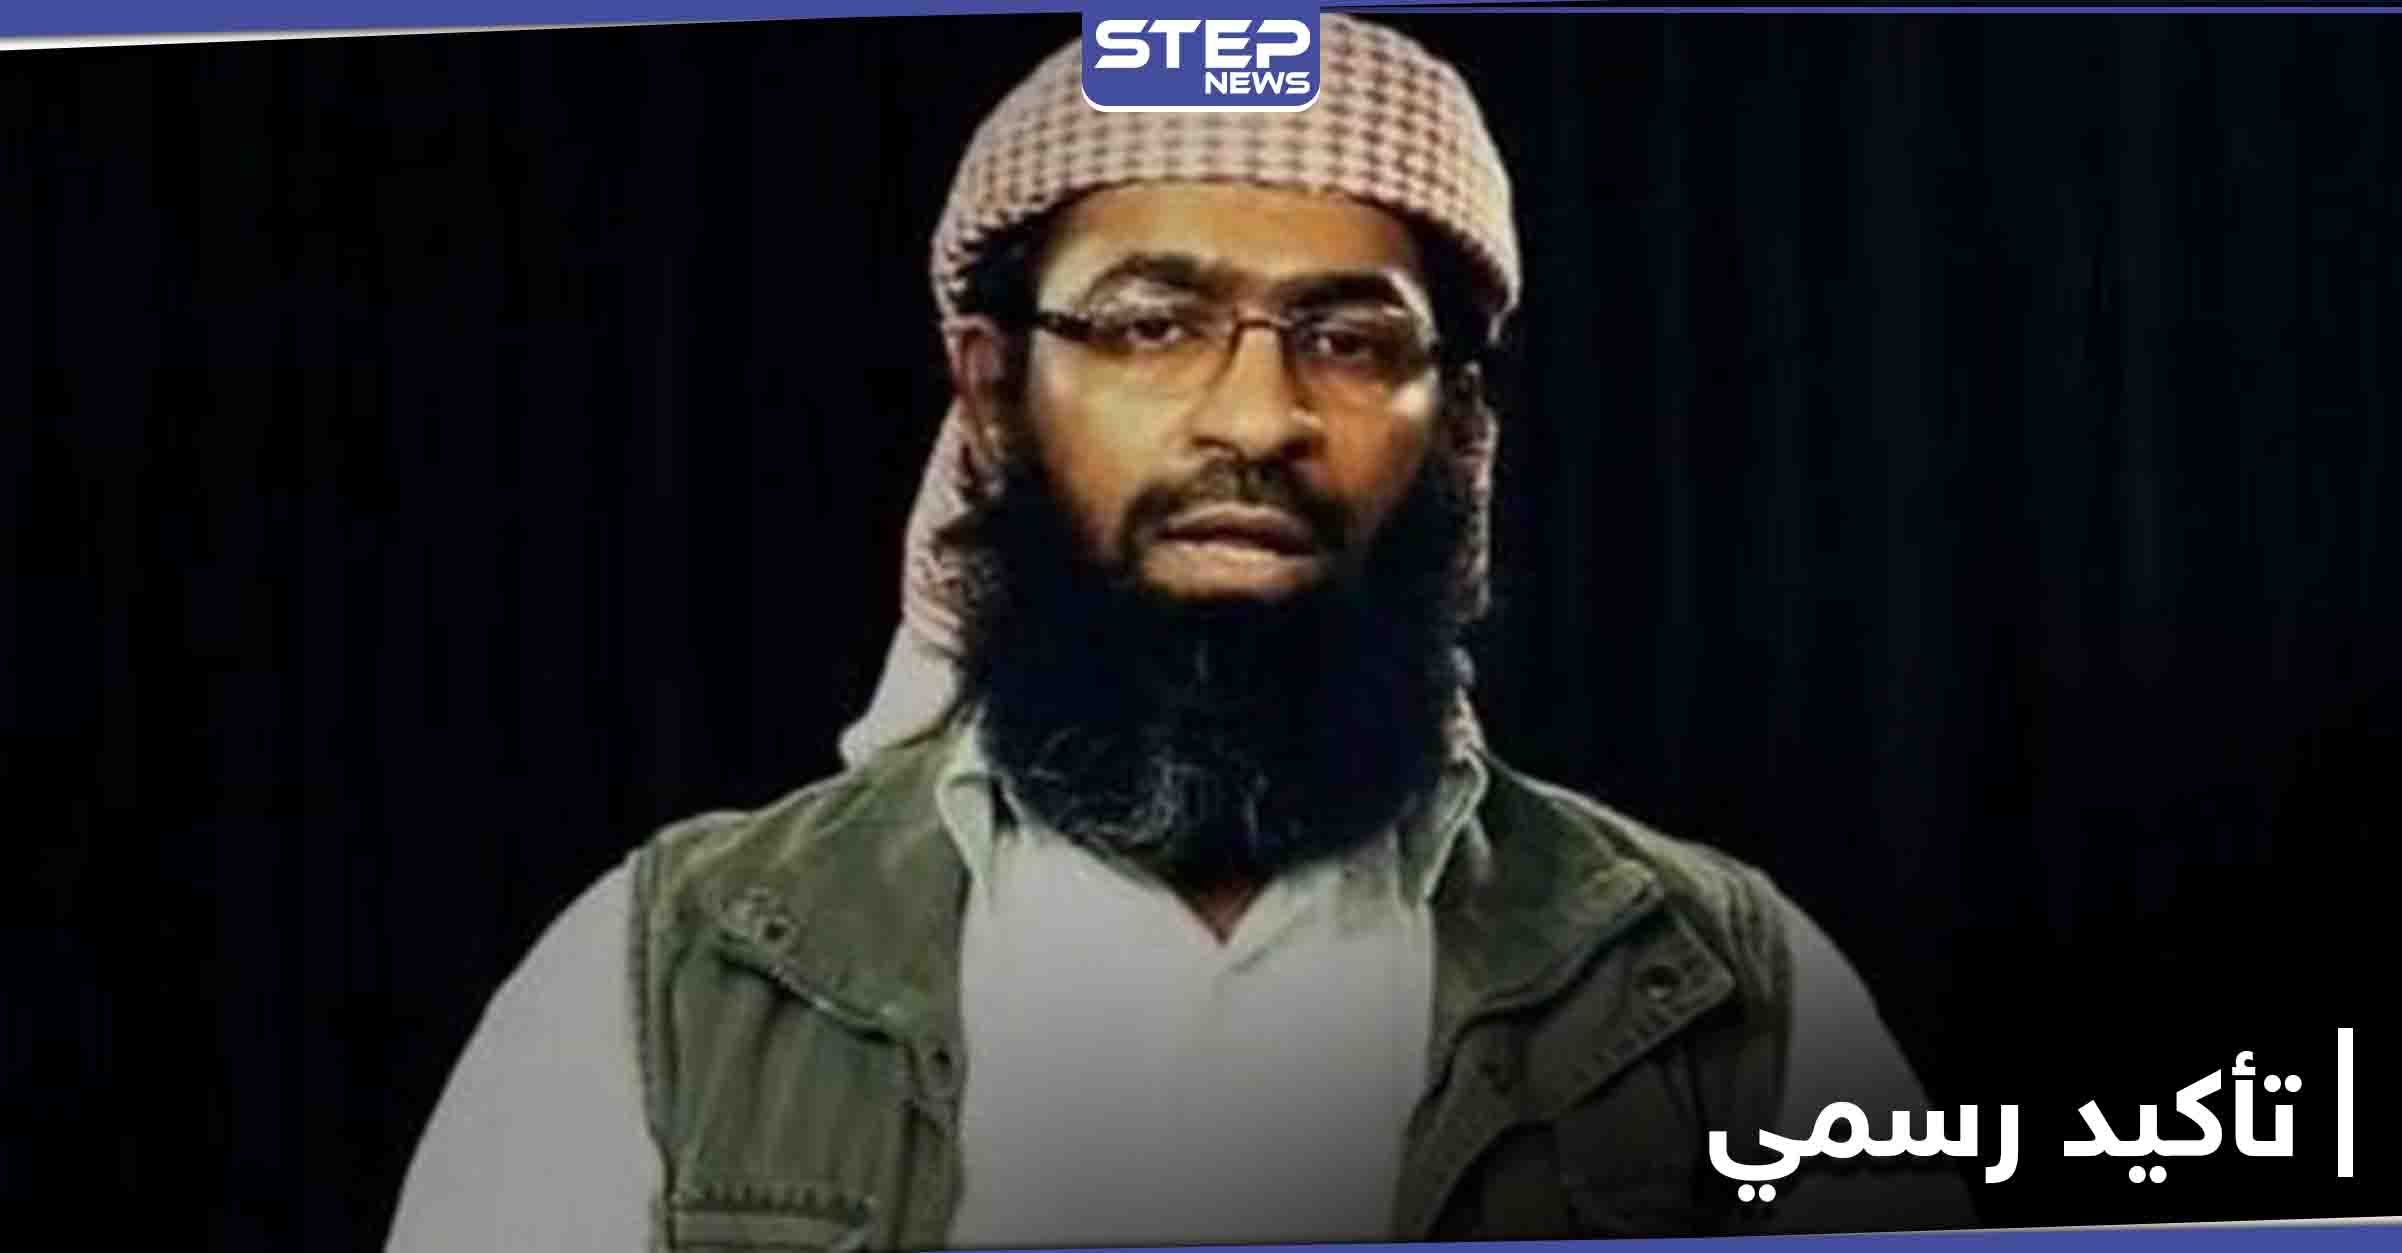 اعتقال زعيم تنظيم القاعدة في اليمن وجزيرة العرب